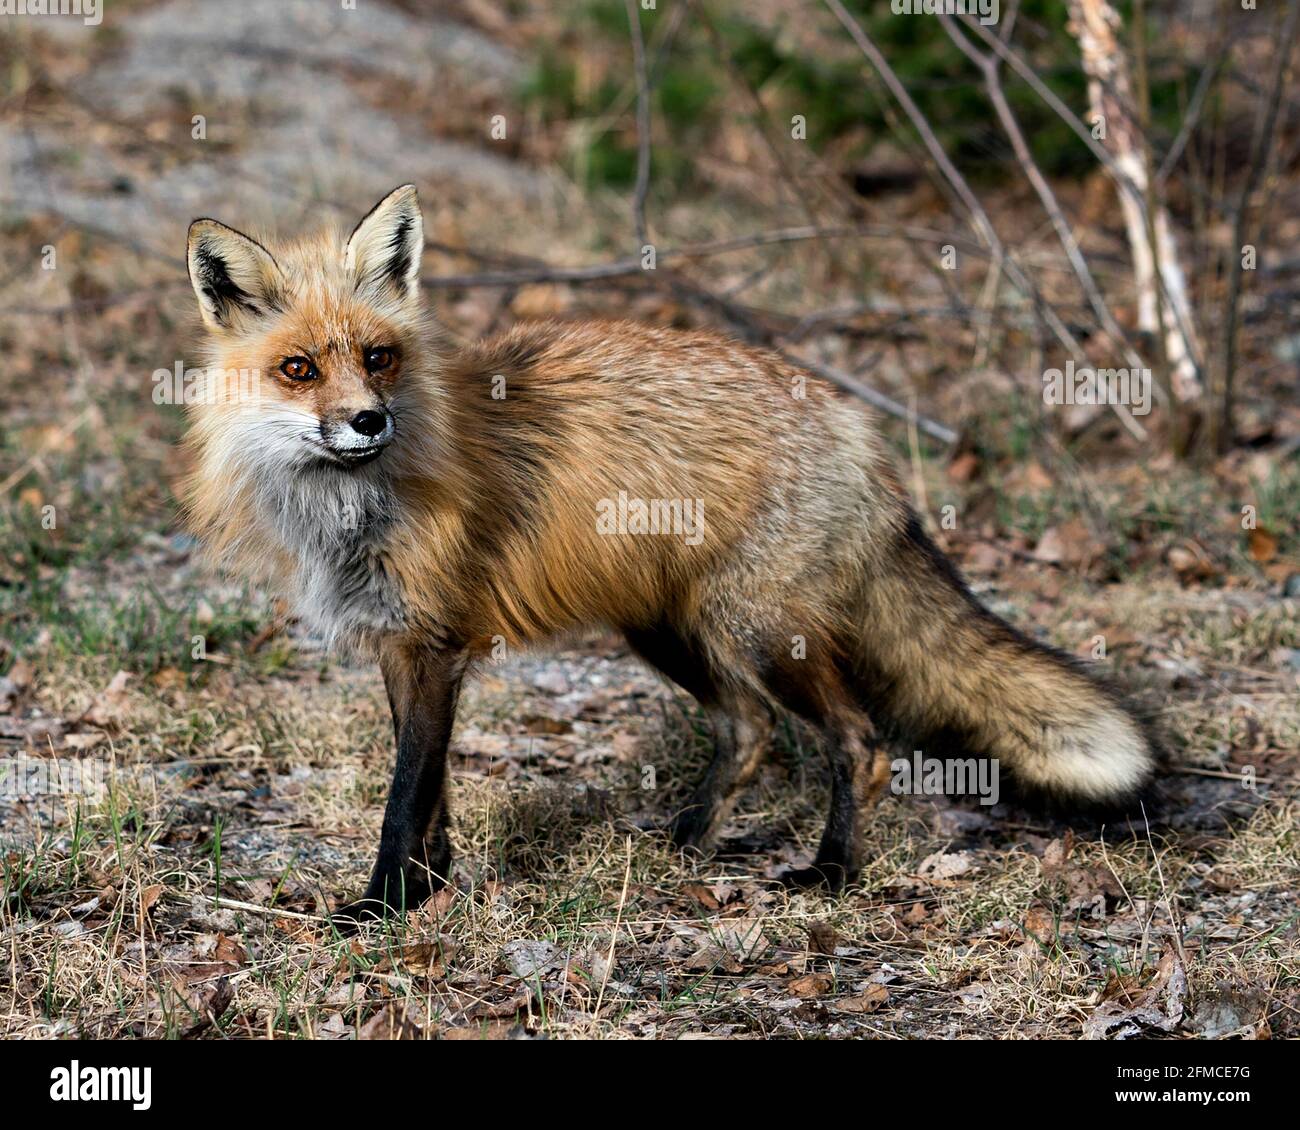 Profilo in primo piano della volpe rossa in primavera con sfondo sfocato, con coda di volpe, pelliccia, nel suo habitat. Immagine FOX. Immagine. Verticale. Foto. Foto Stock